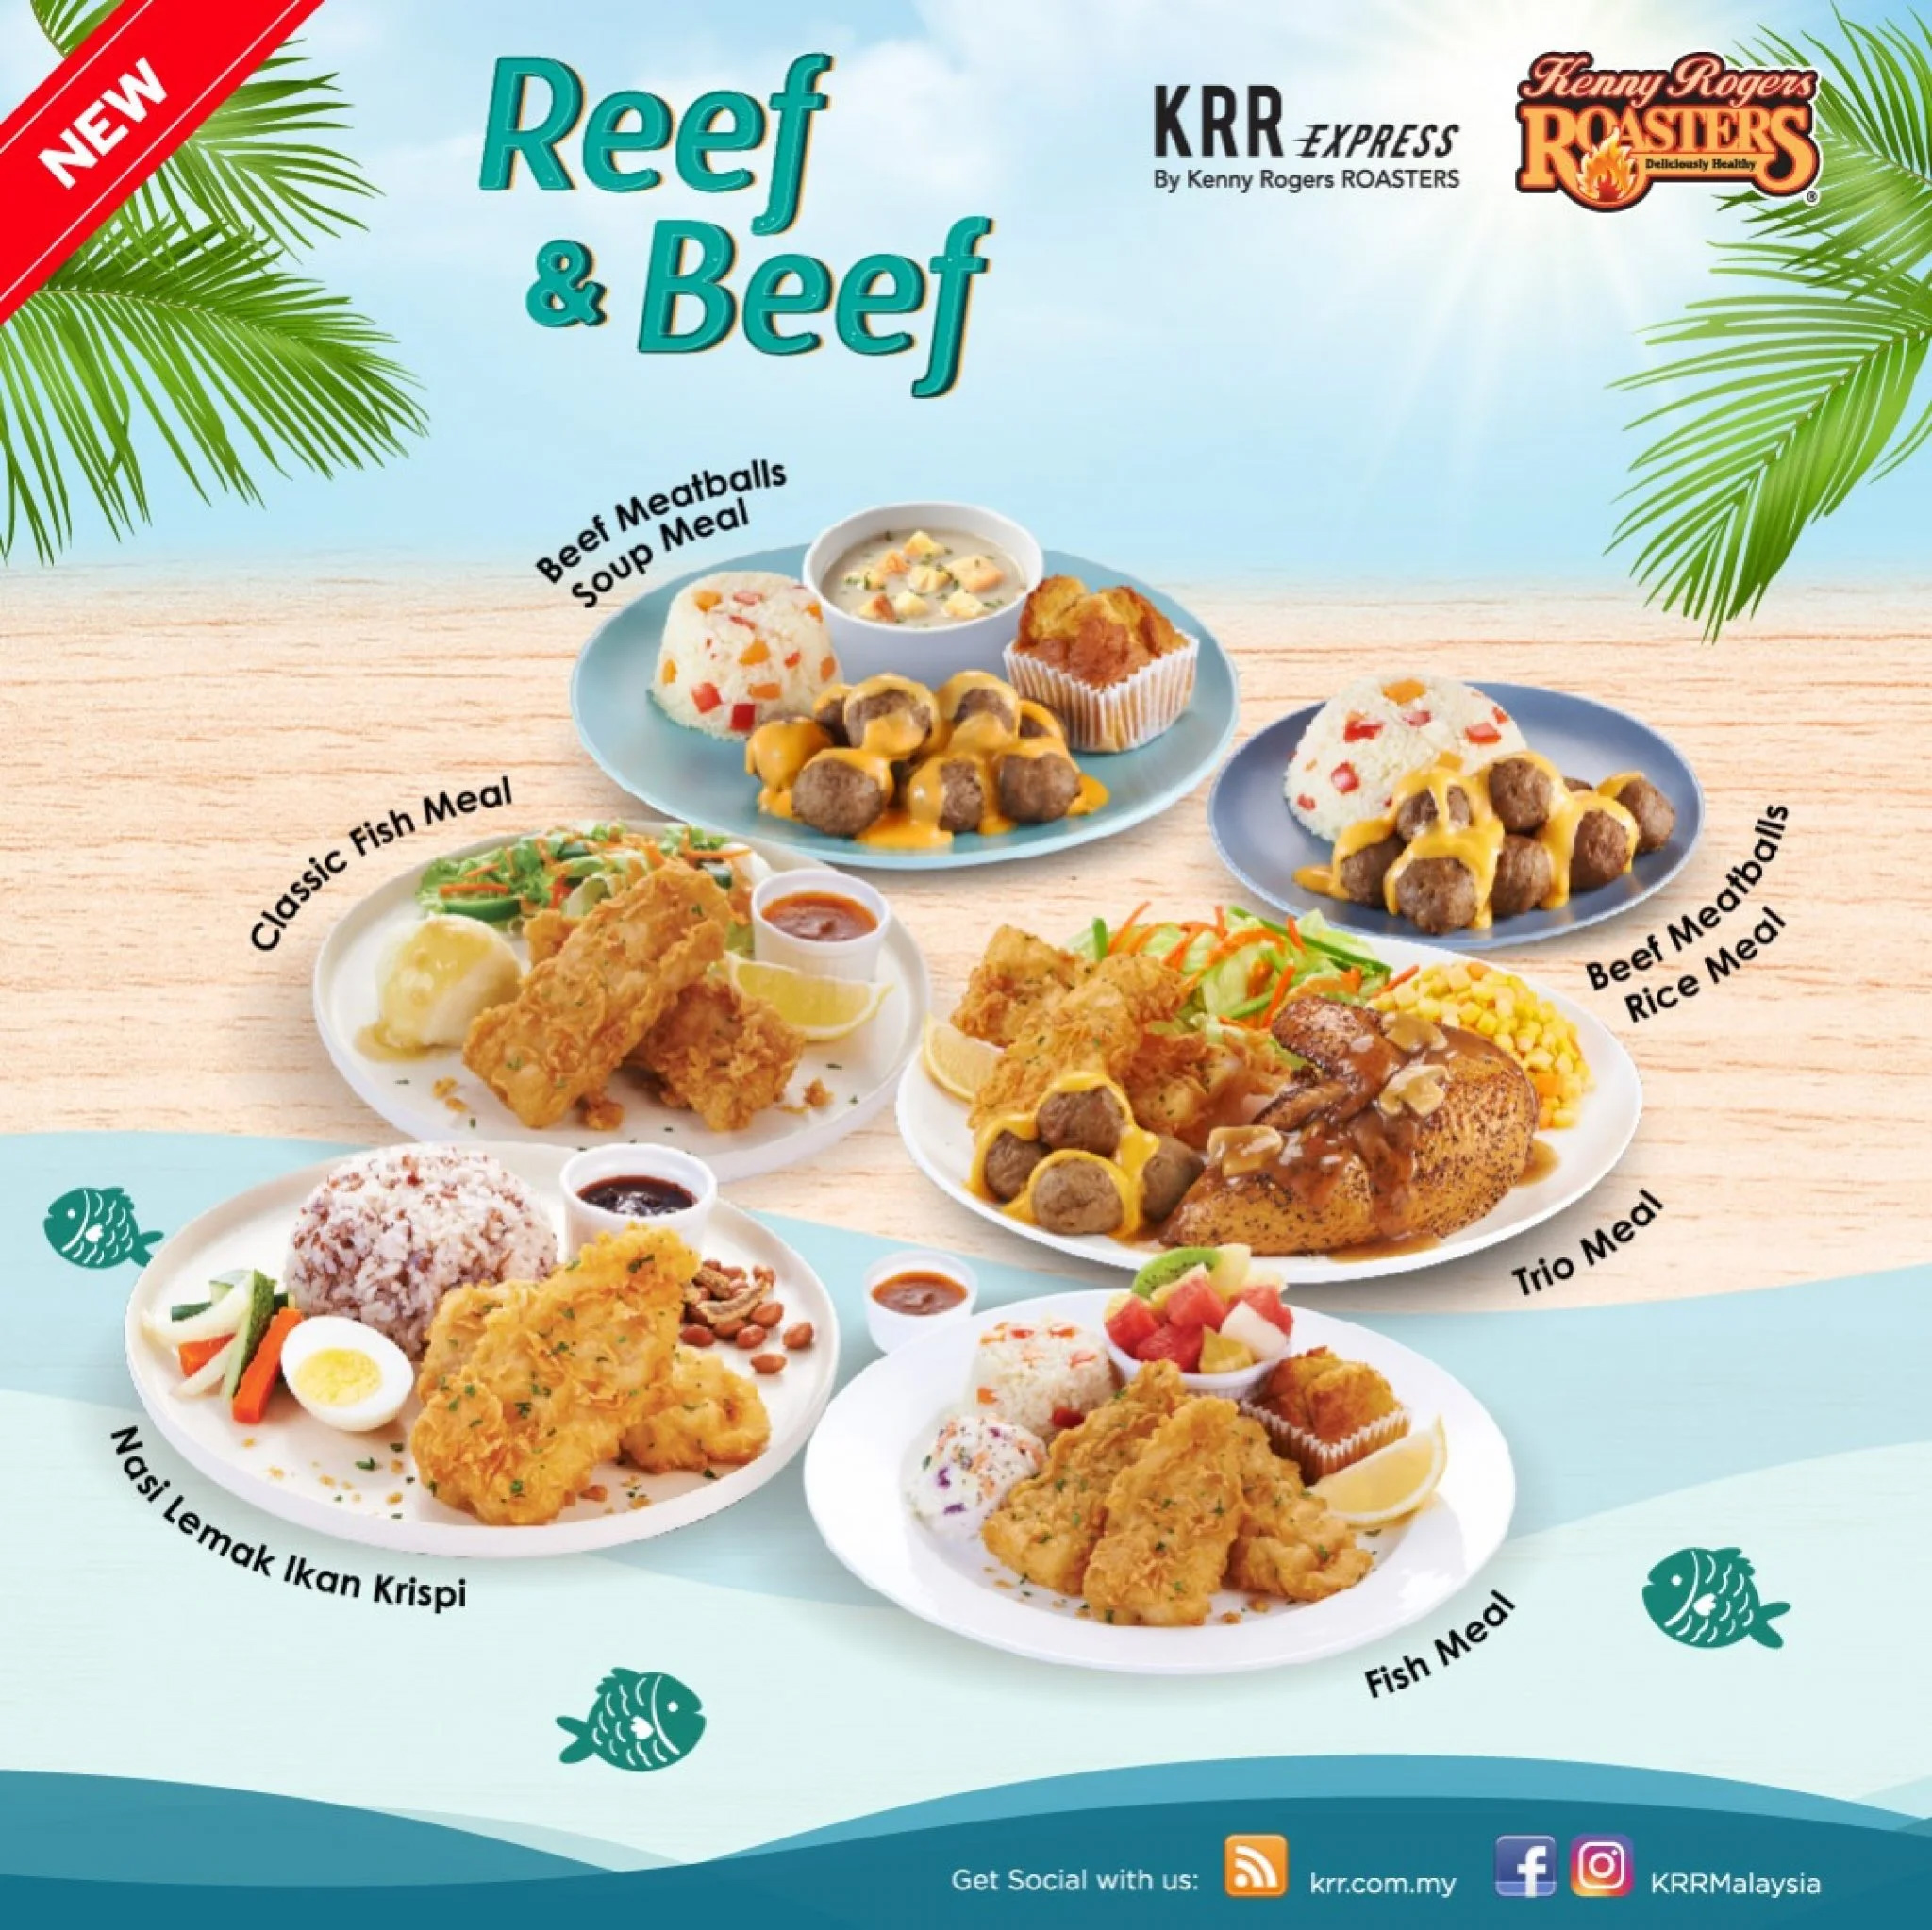 Kenny Rogers ROASTERS’ brand NEW menu – Reef & Beef